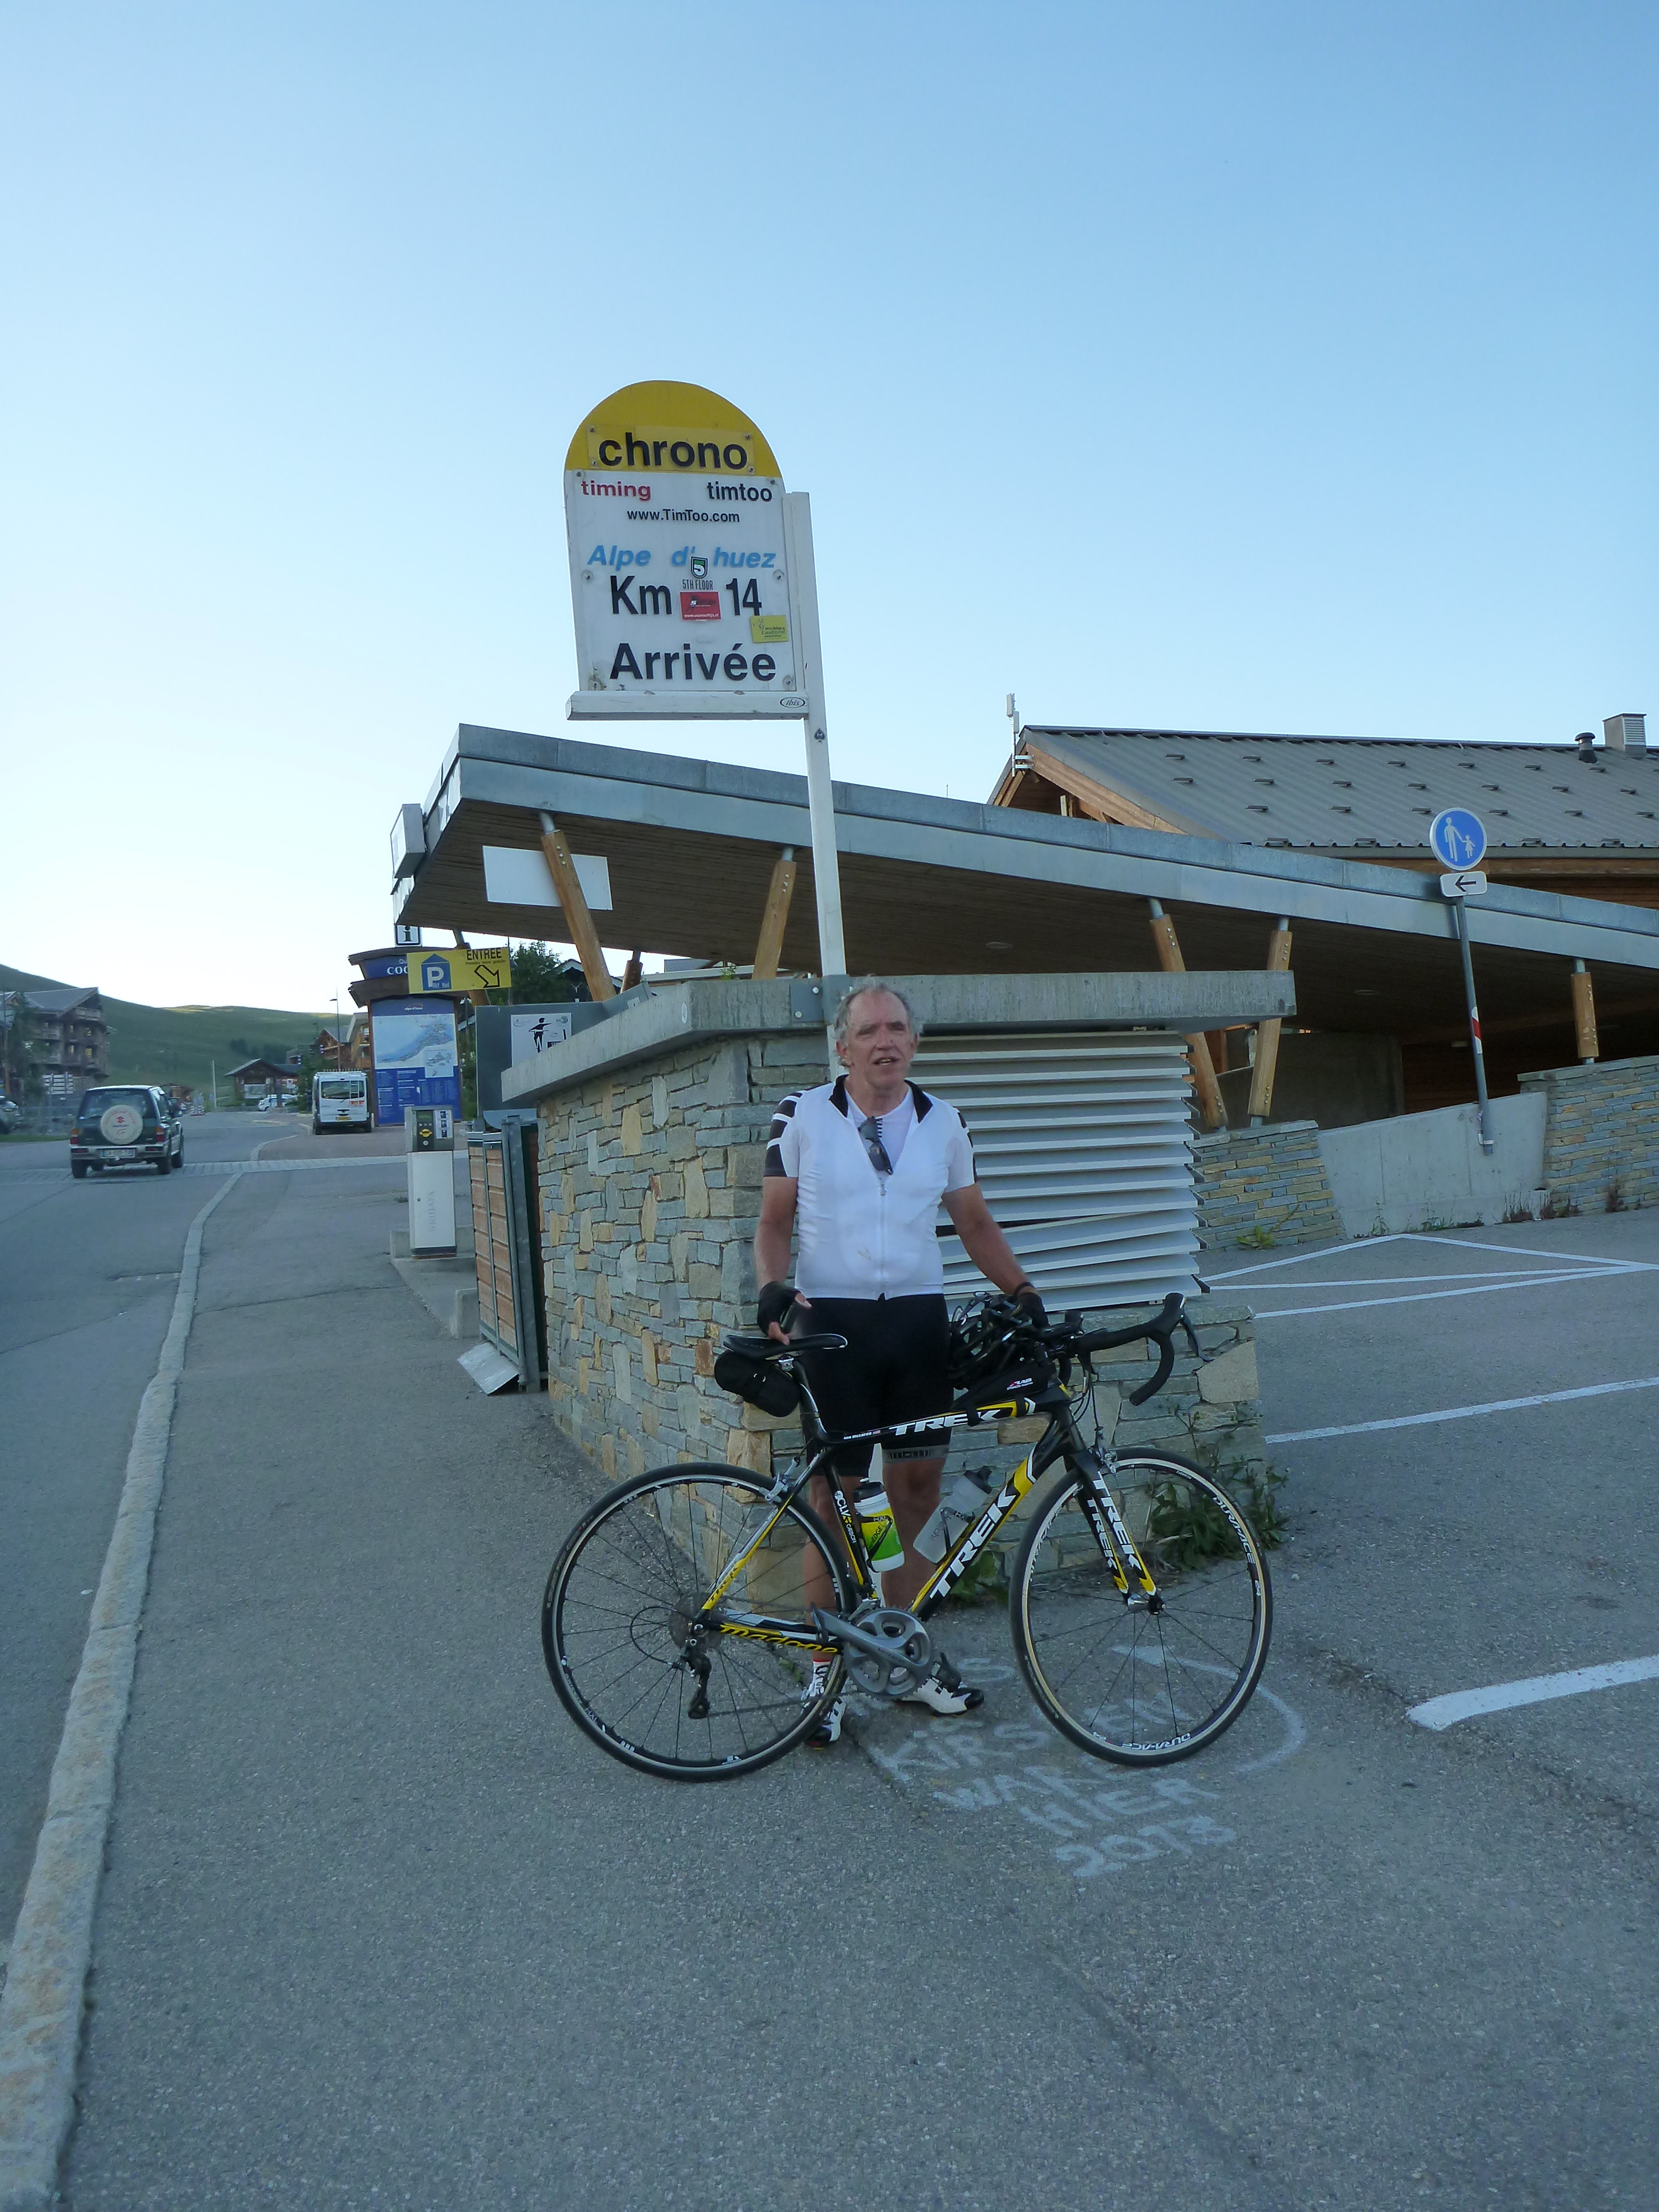 Official Tour de France finish line at Alpe d'Huez